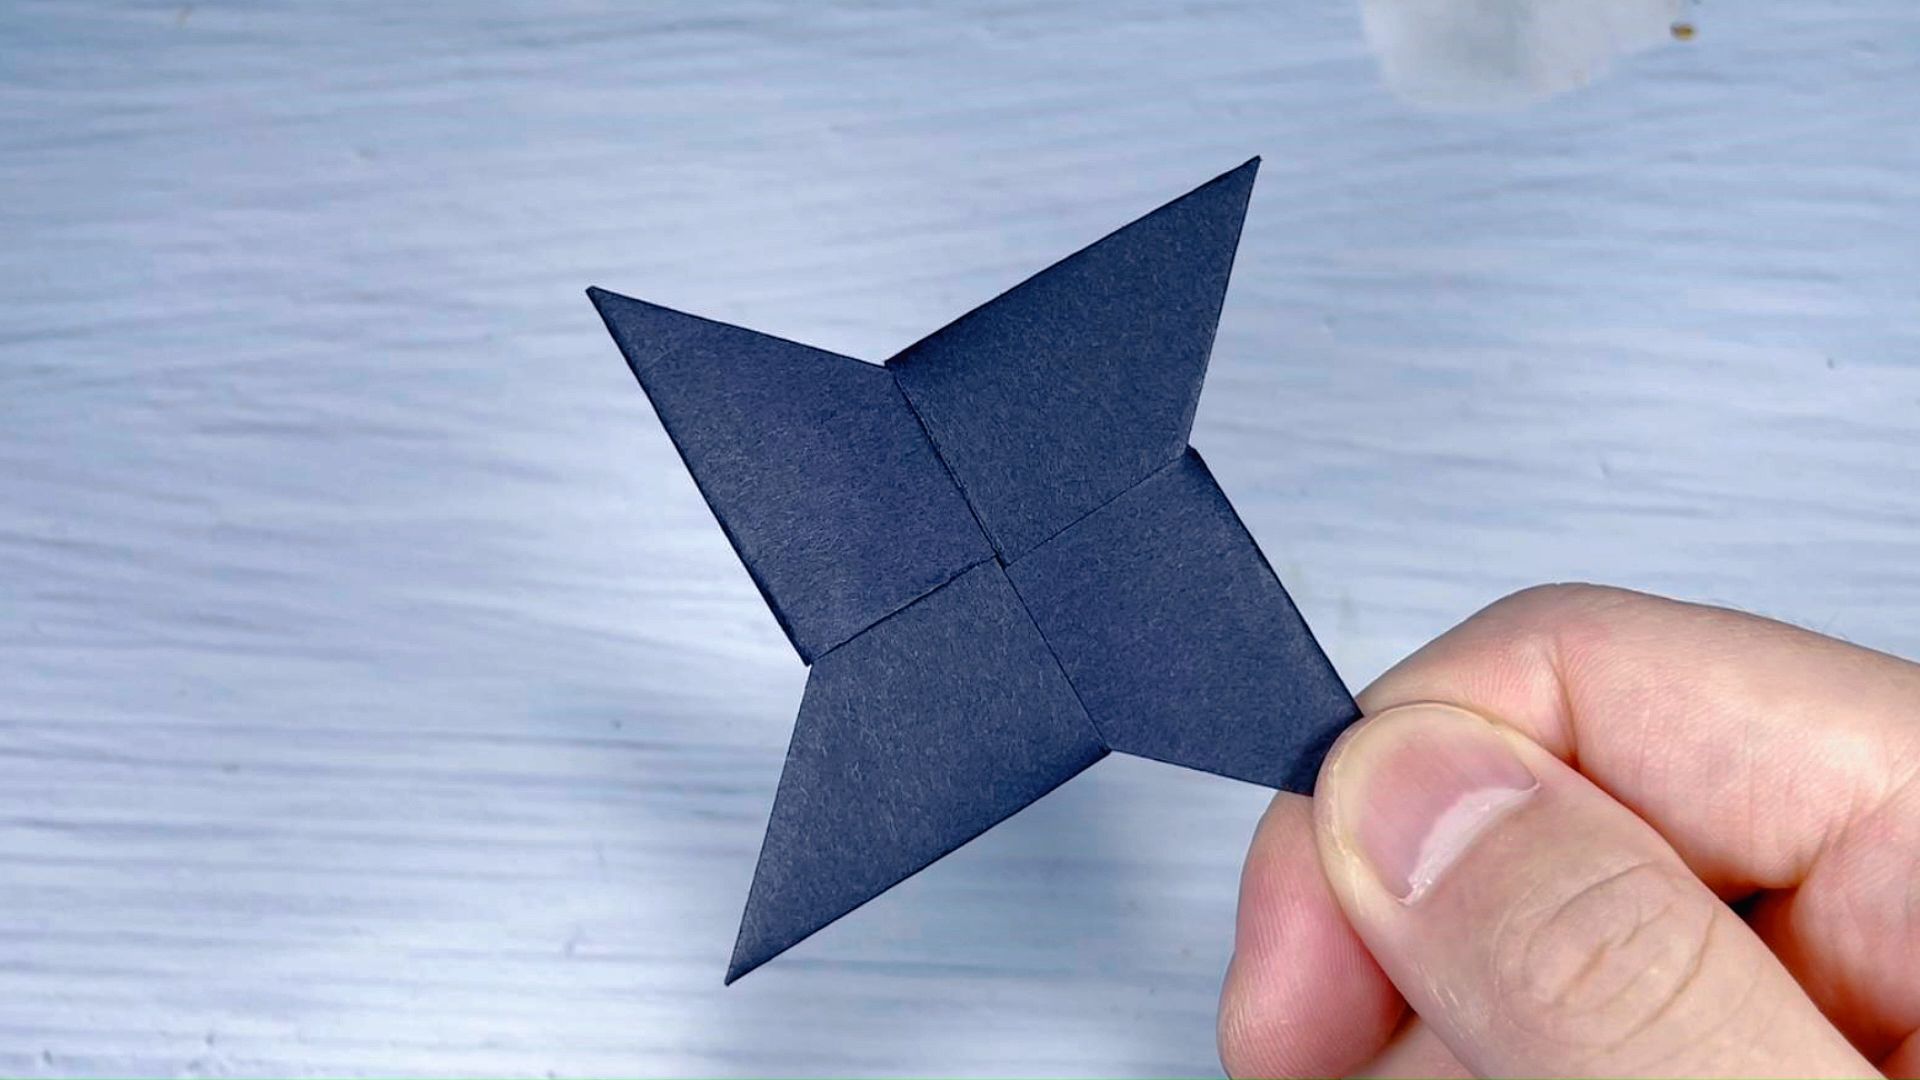 折纸飞镖教程,一张正方形纸折回旋飞镖,创意手工制作